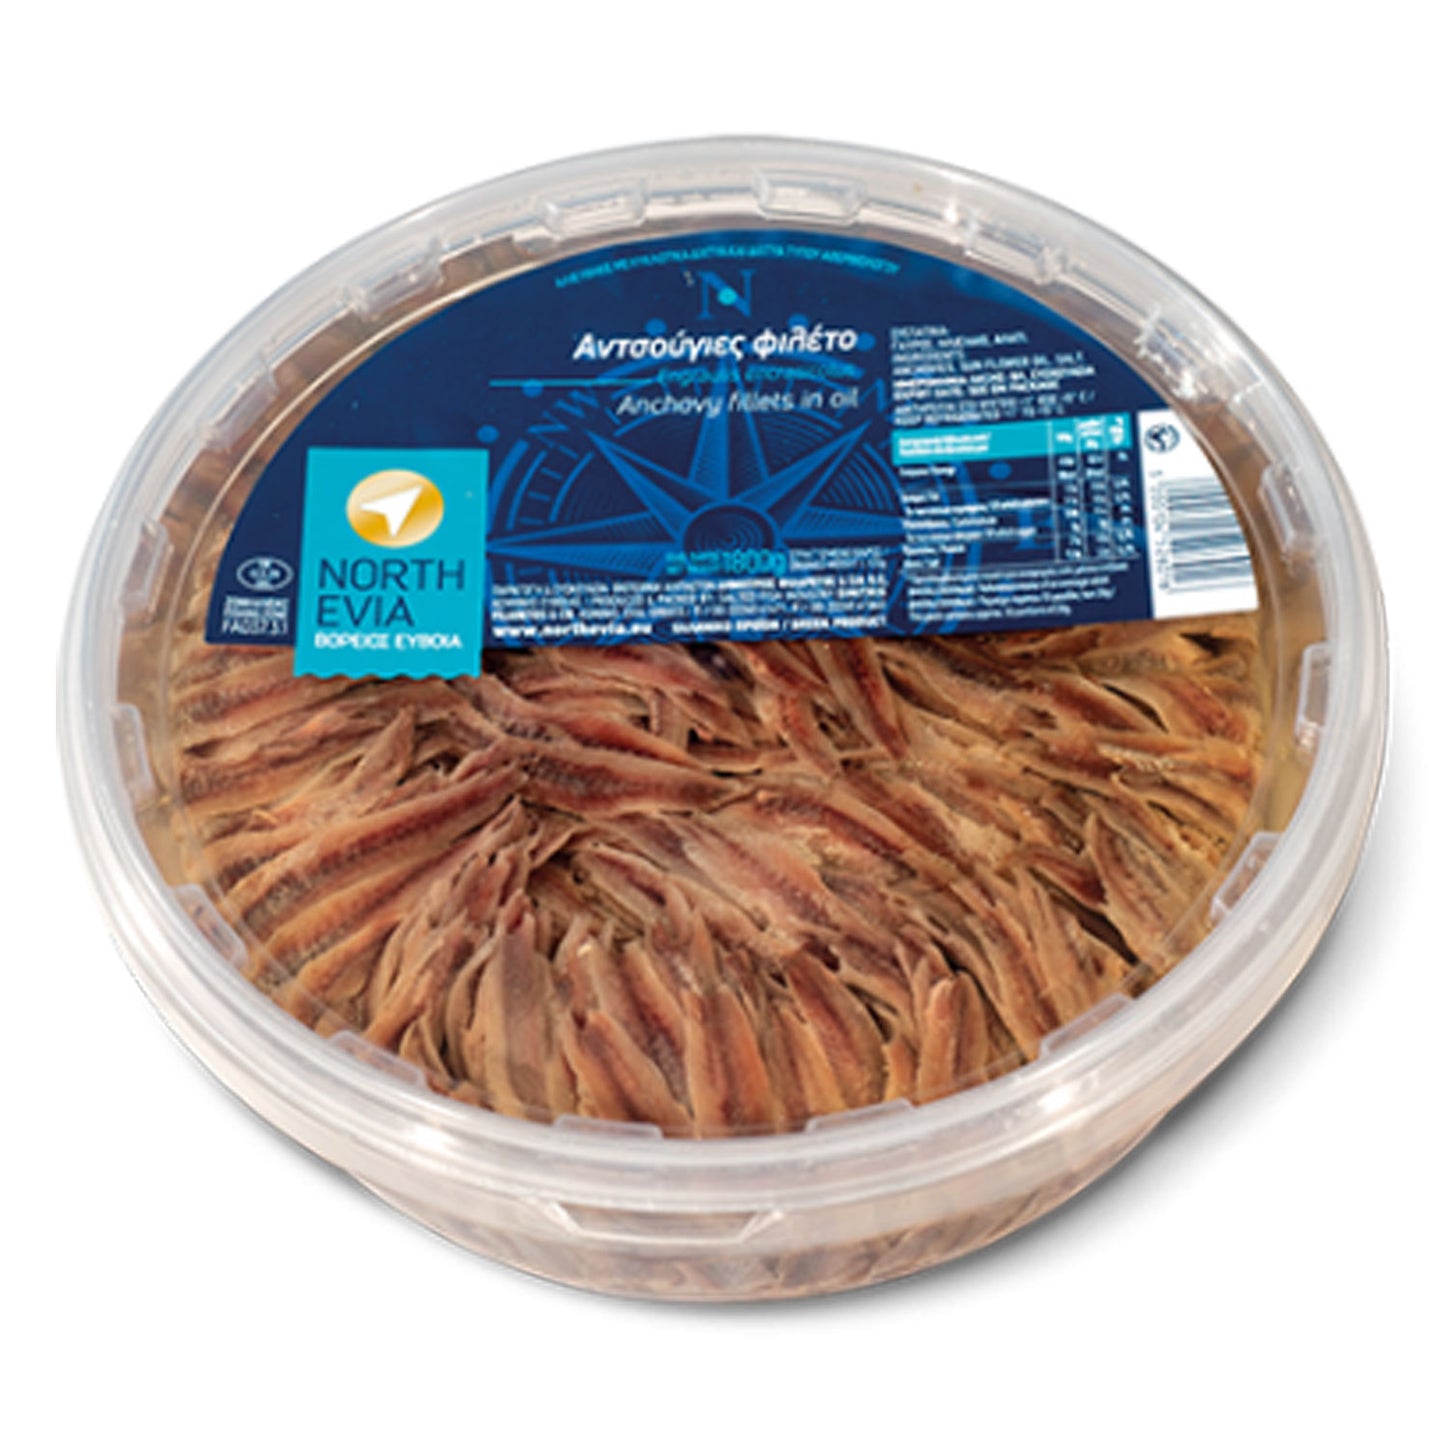 Sardellenfilets aus Euböa - 2kg